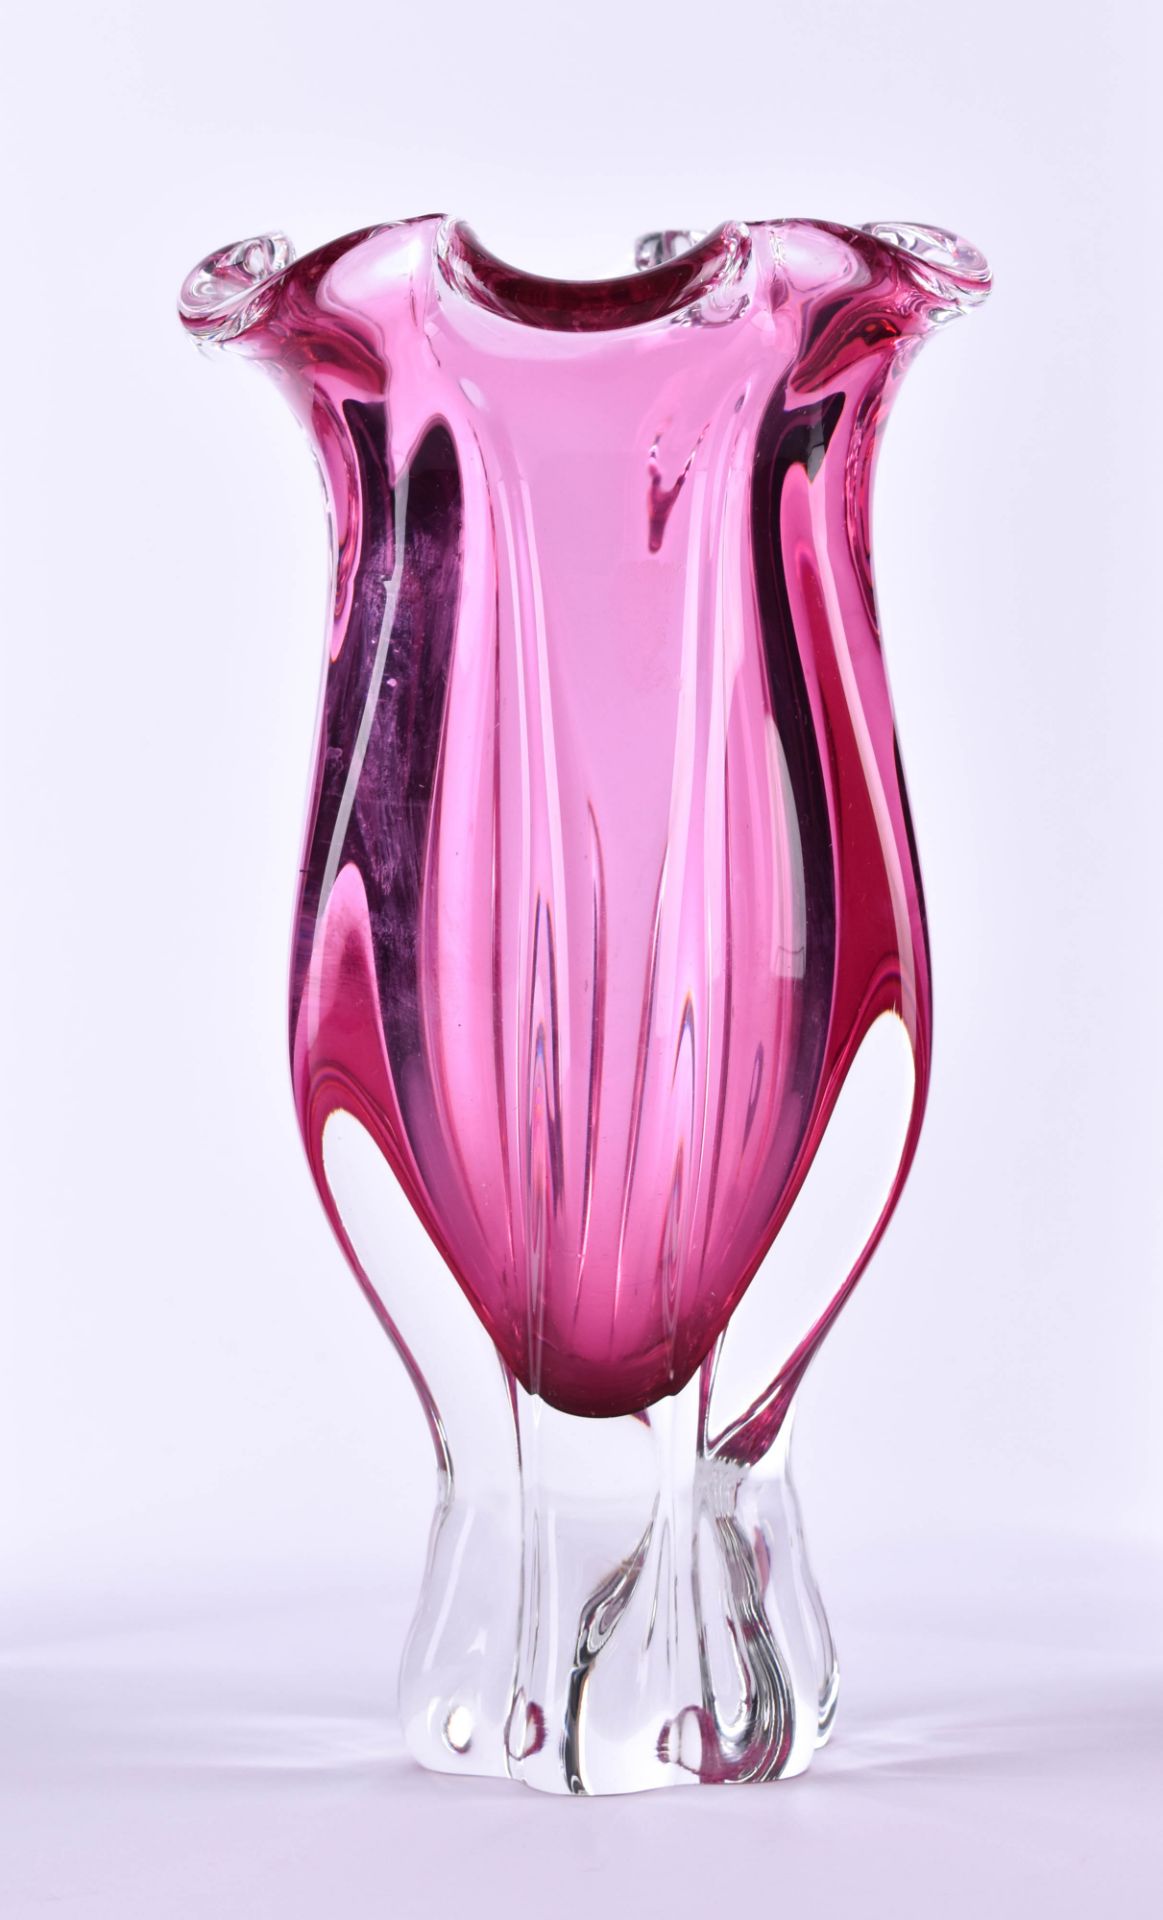 Kristallvase 20. Jhd.mit violettfarbenen Einschmelzungen, H: 22 cmCrystal vase 20th centurywith